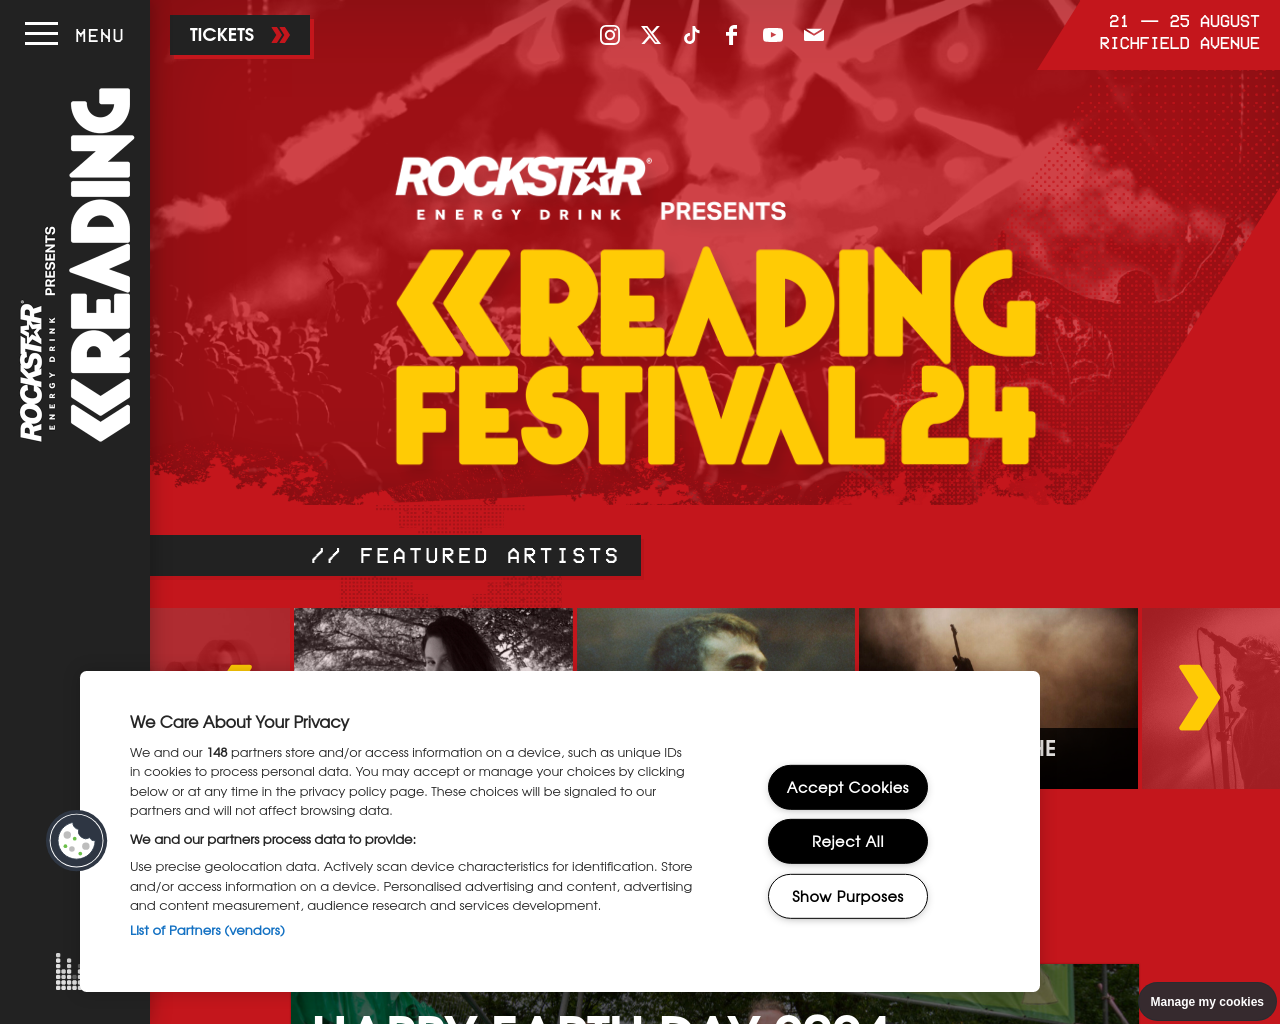 readingfestival.com